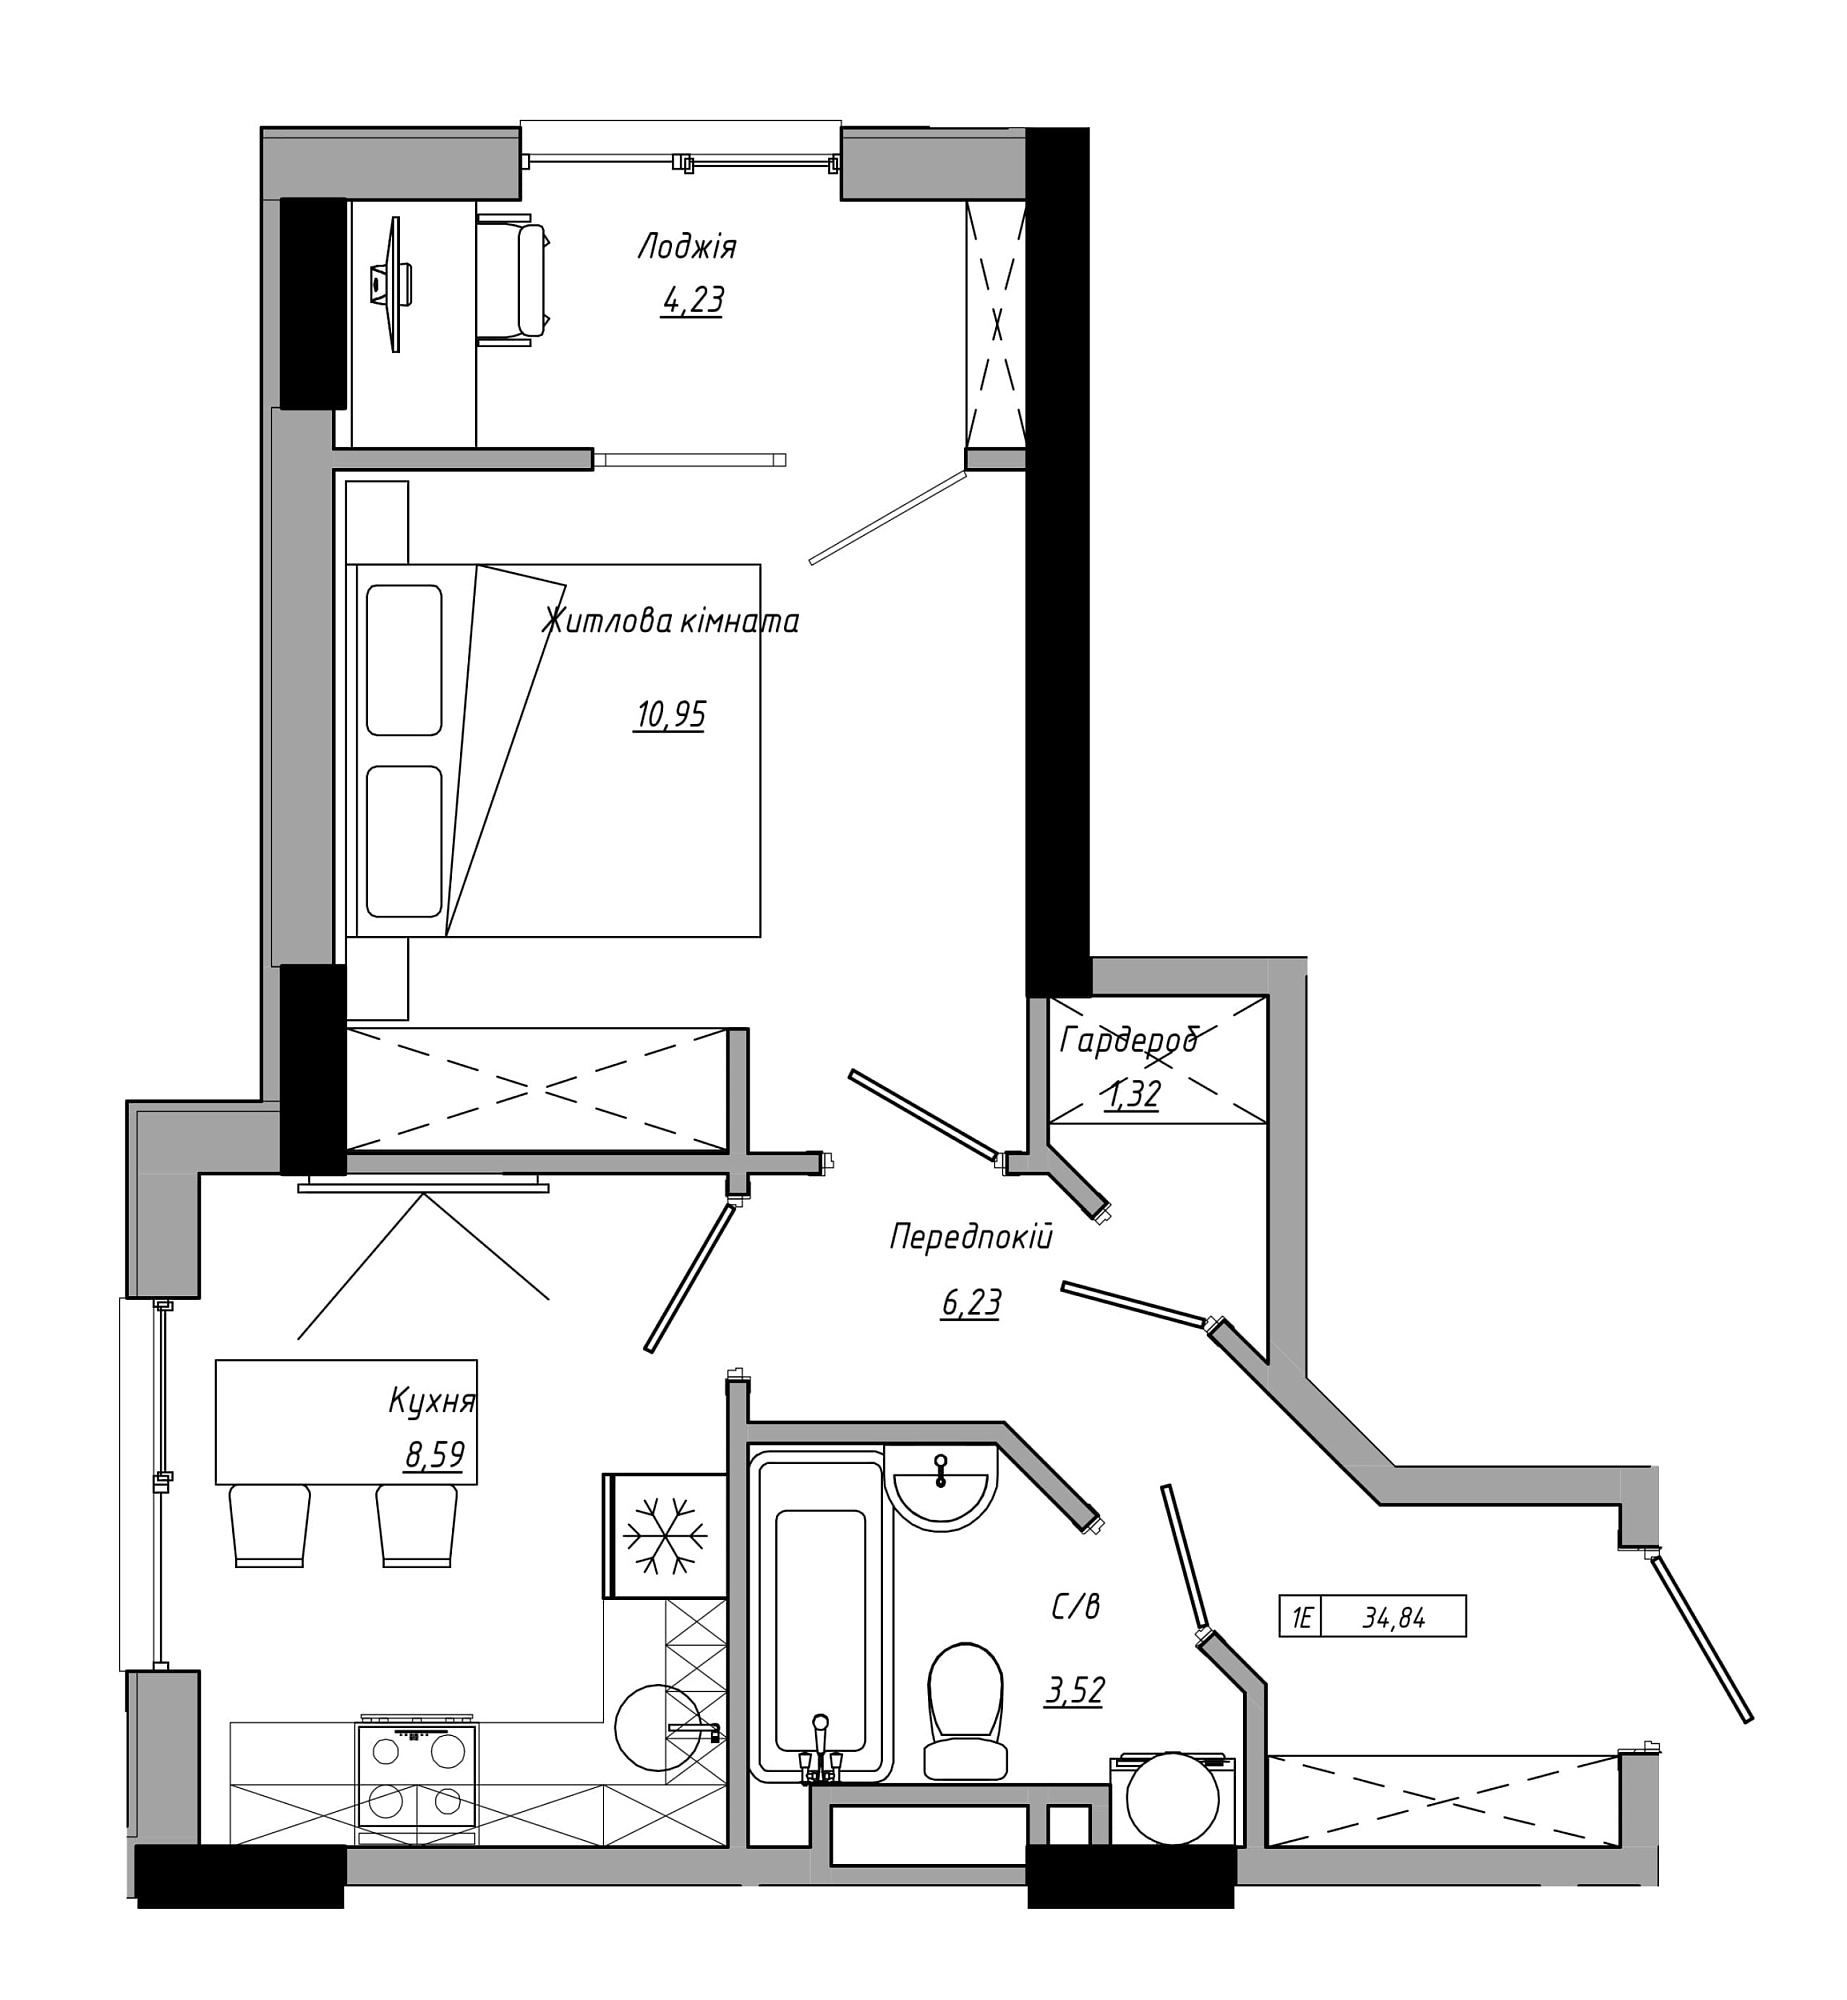 Планування 1-к квартира площею 34.84м2, AB-21-07/00009.